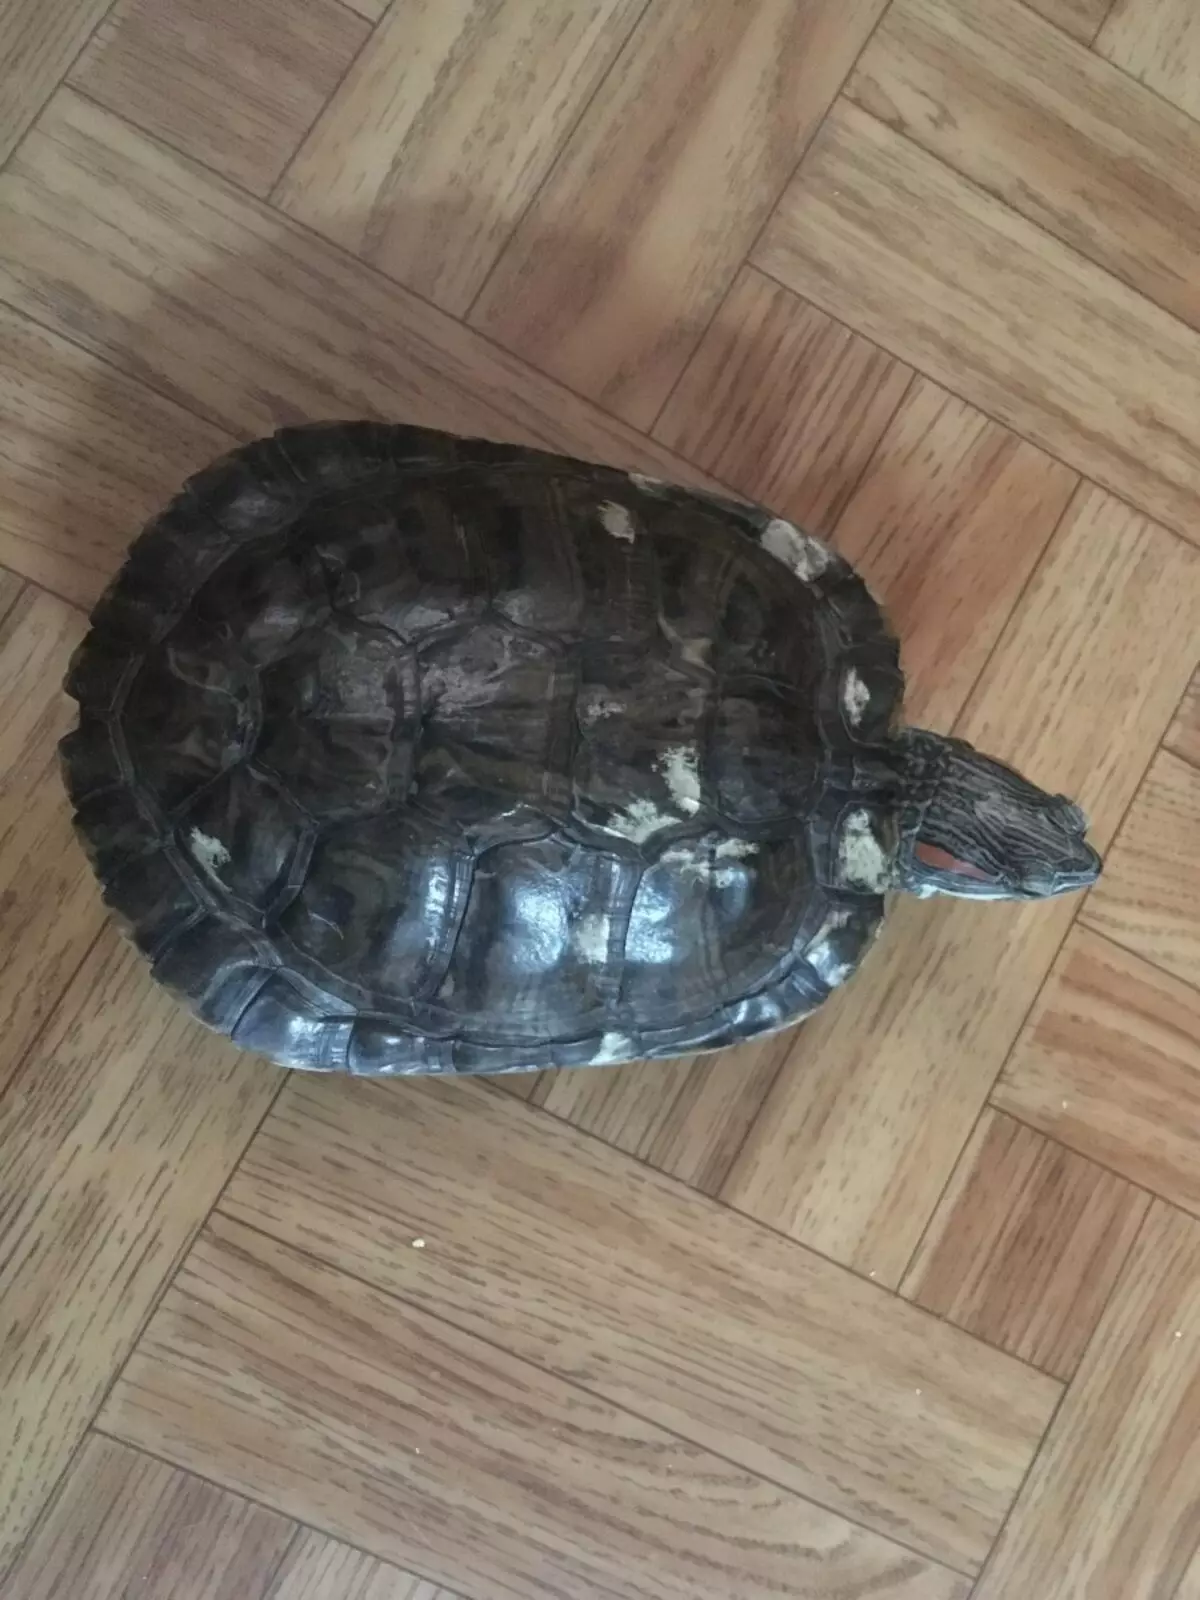 Выпустим черепаху. Красноухая черепаха в домашних условиях. Можно ли выпускать черепаху гулять по квартире. Можно ли отпускать черепаху гулять по квартире.